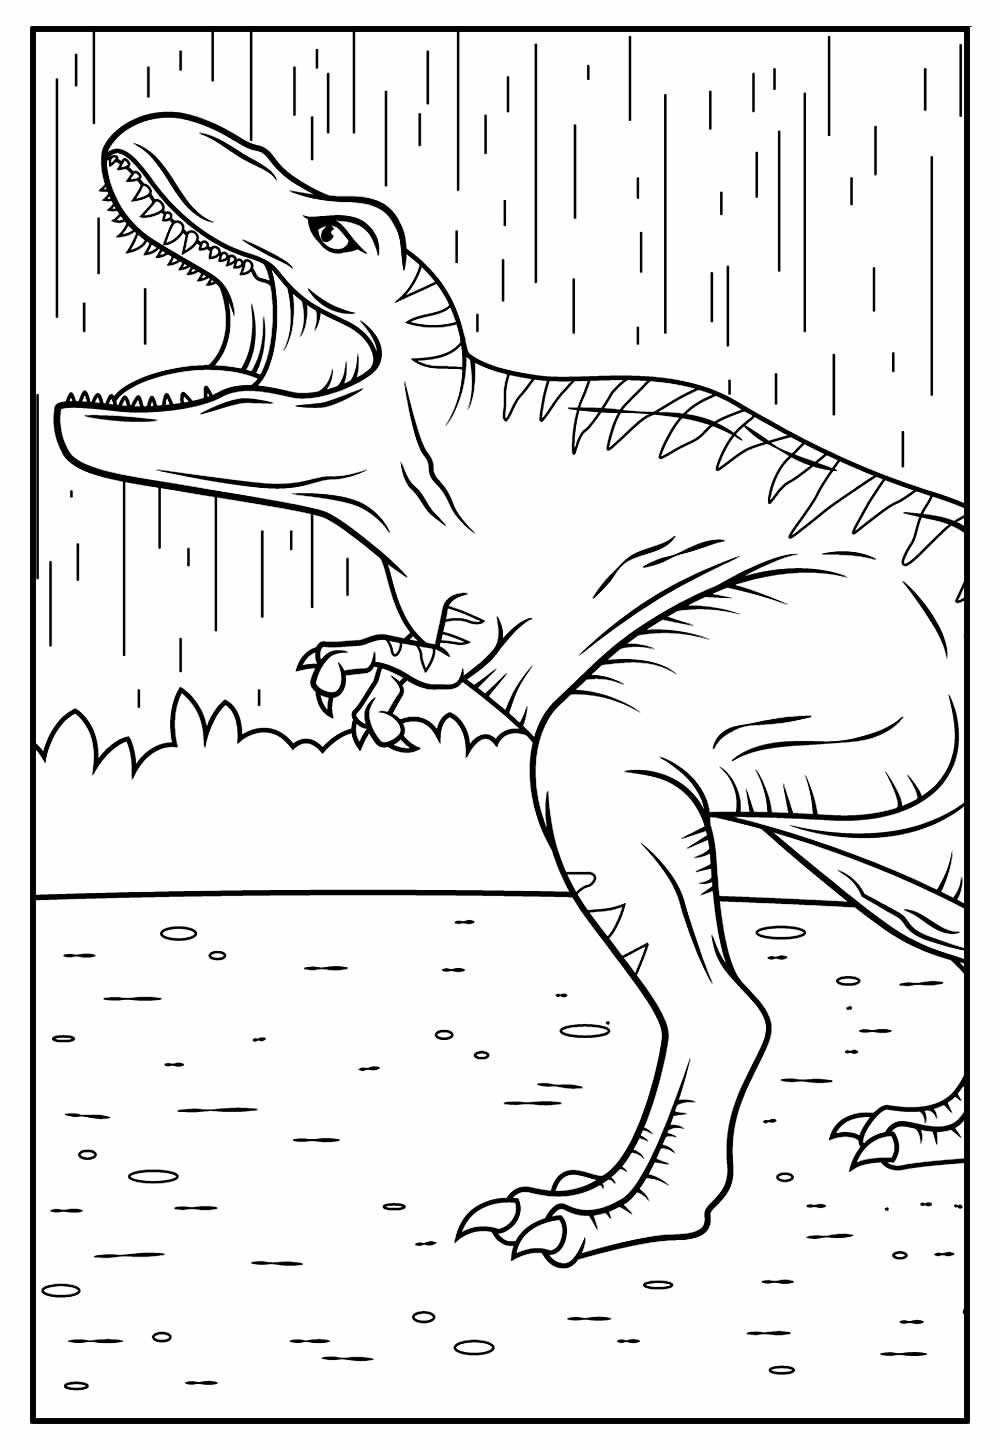 Desenho de Jurassic Park para colorir